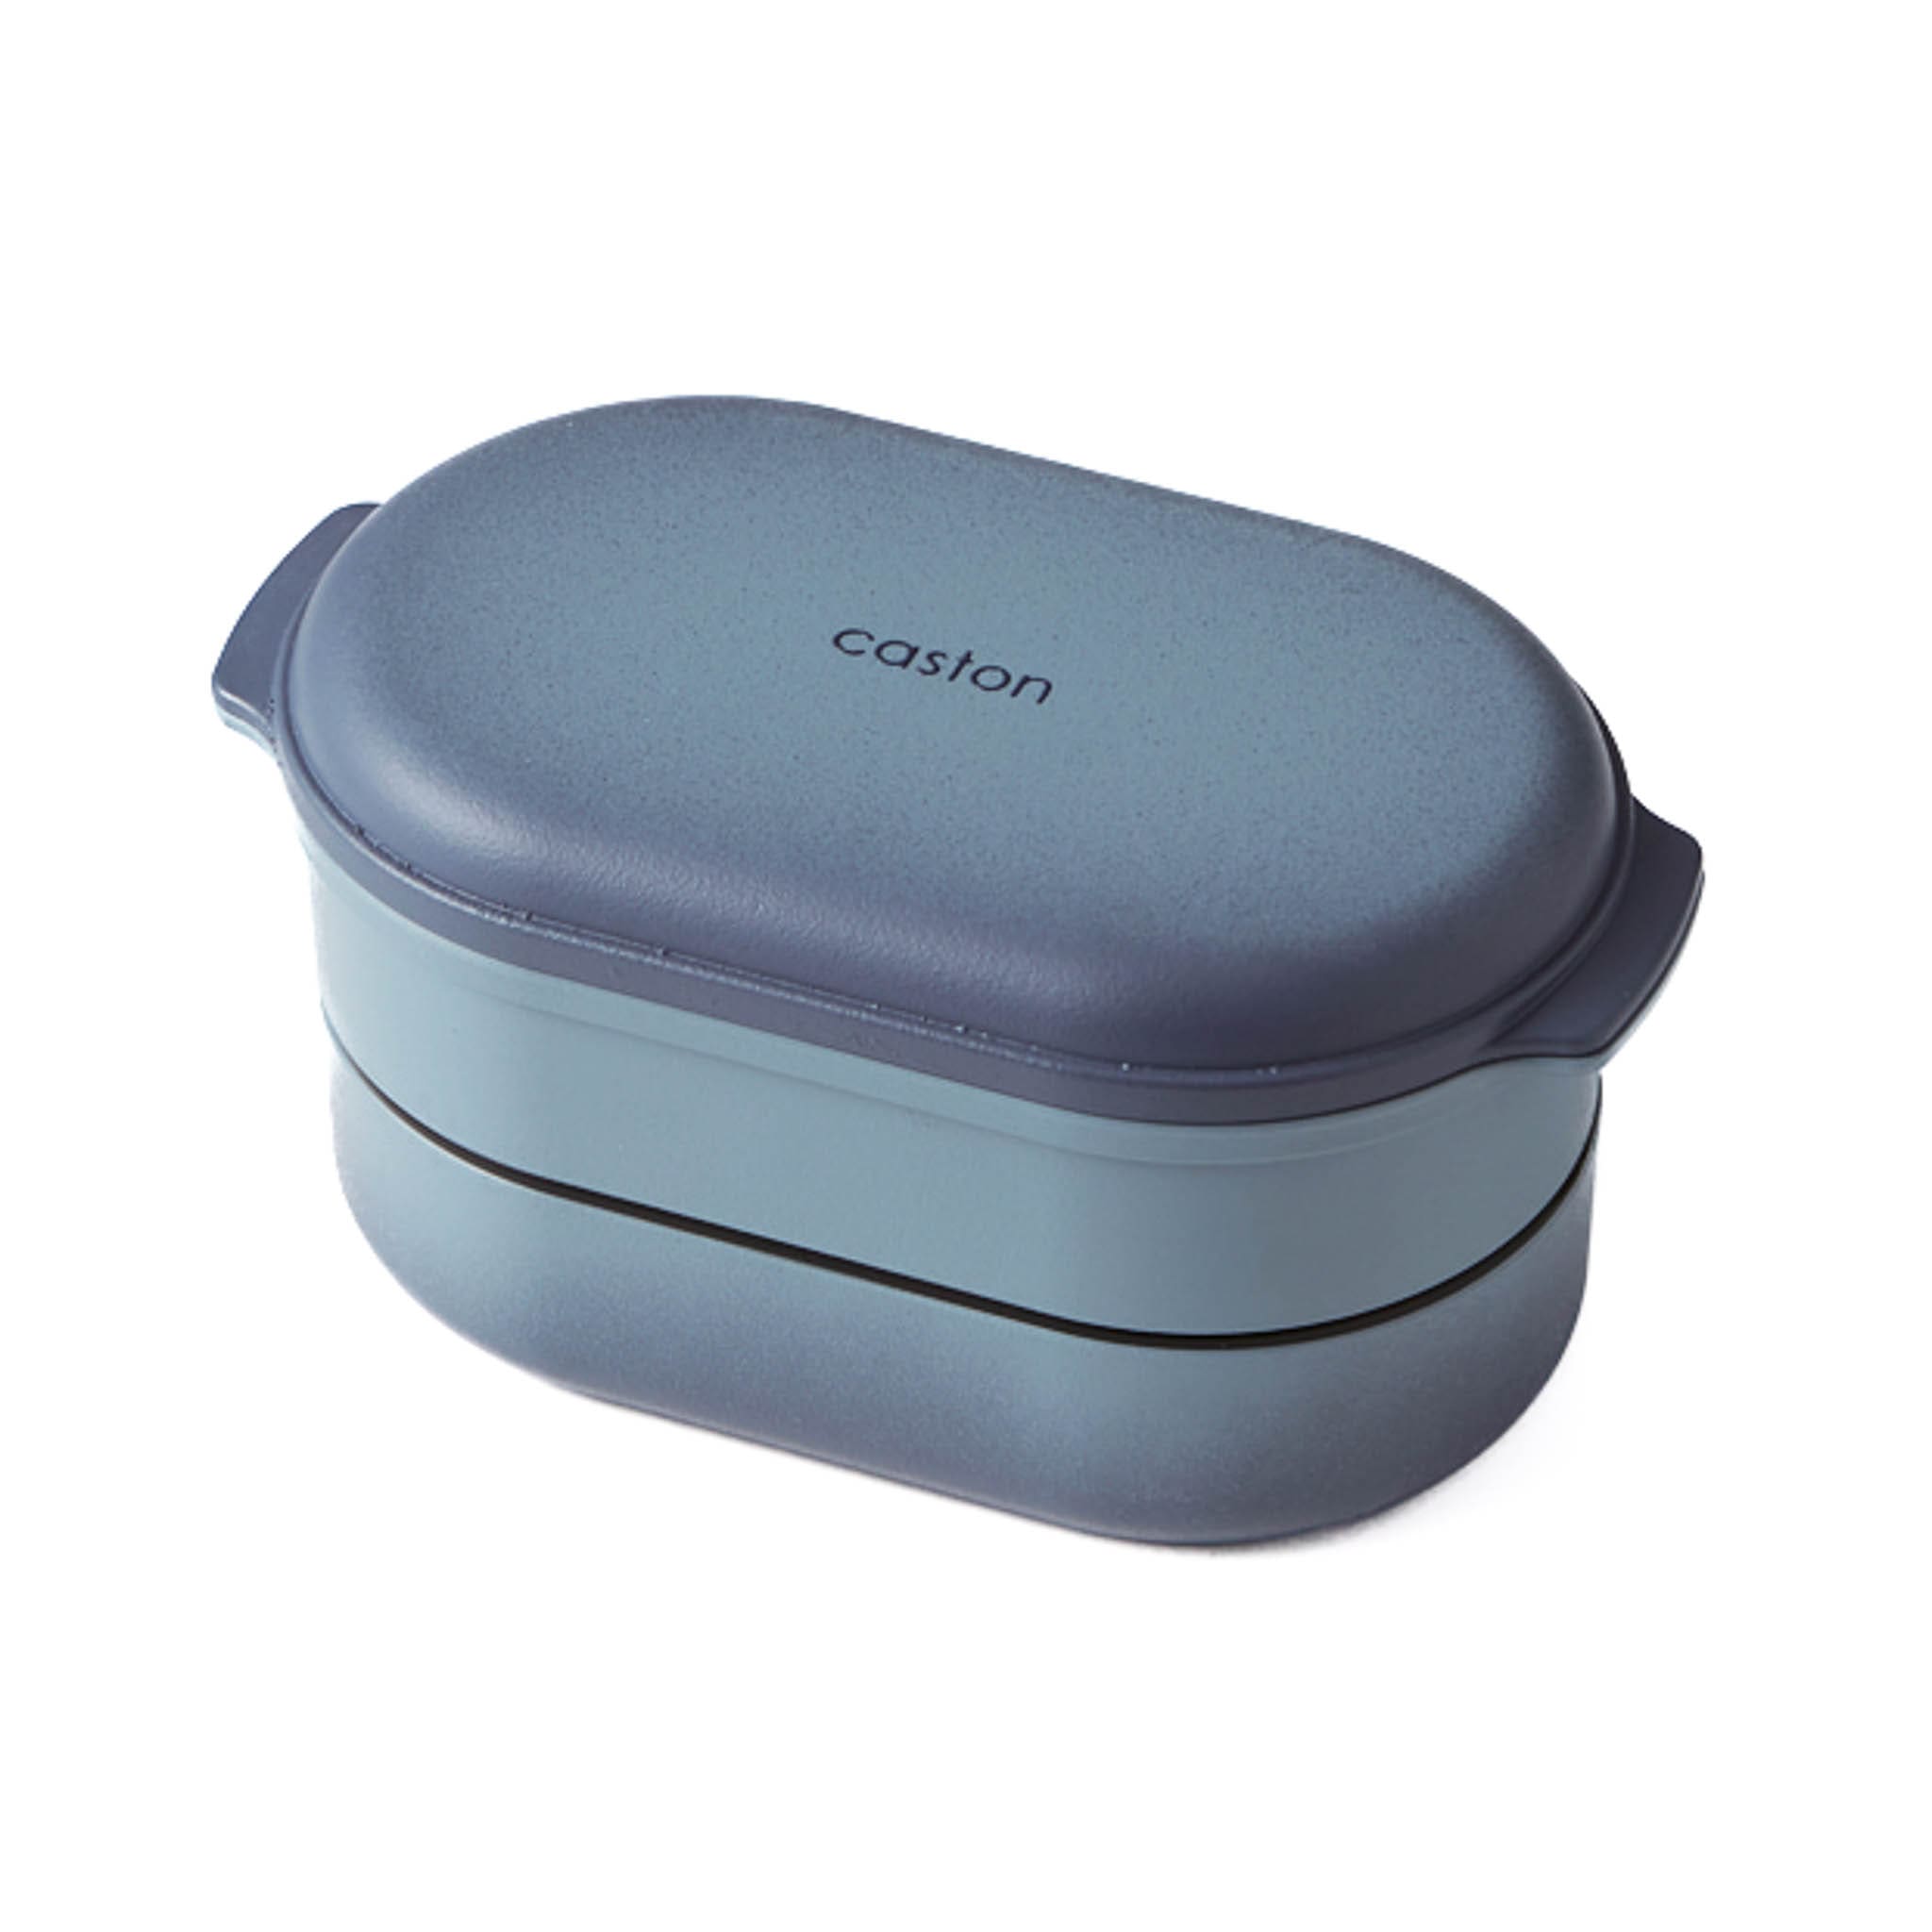 Takenaka Caston Blue Two Compartment Bento Box